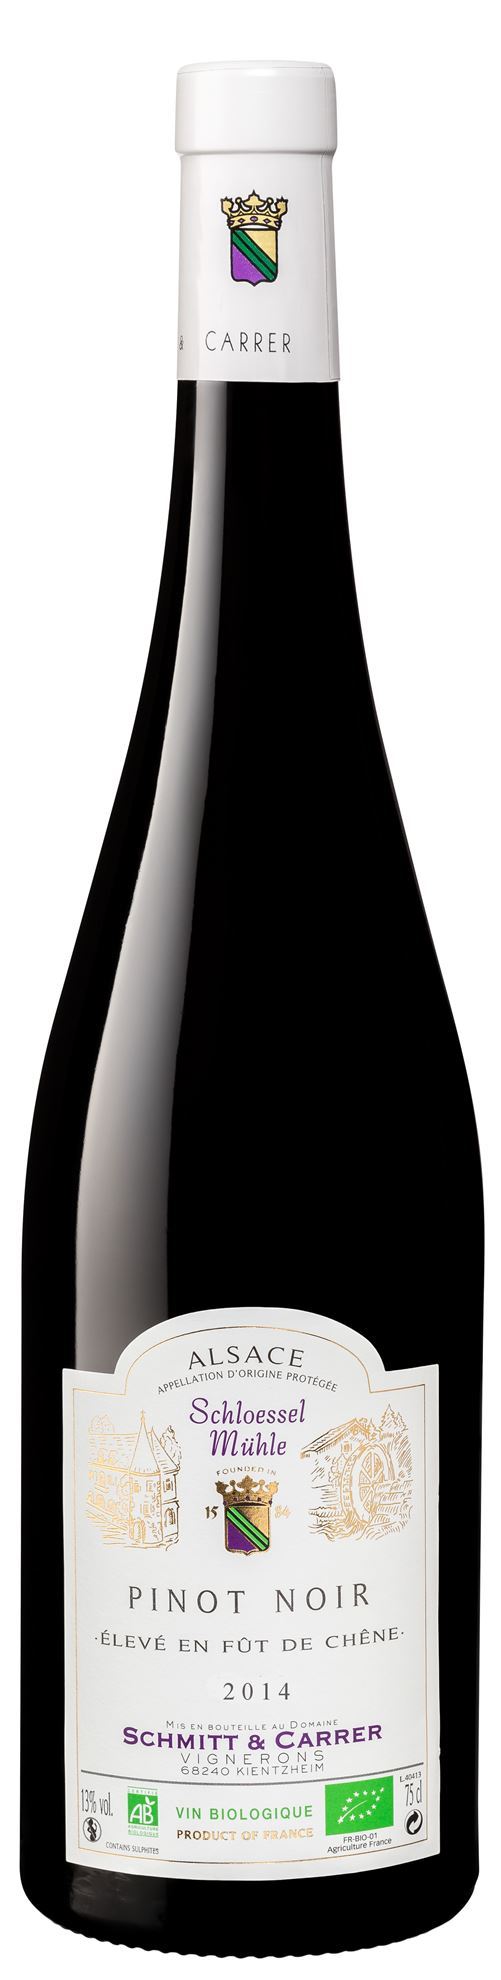 Schmitt & Carrer PINOT NOIR Fût de Chêne Premier Vin d'Alsace 2014 BIO